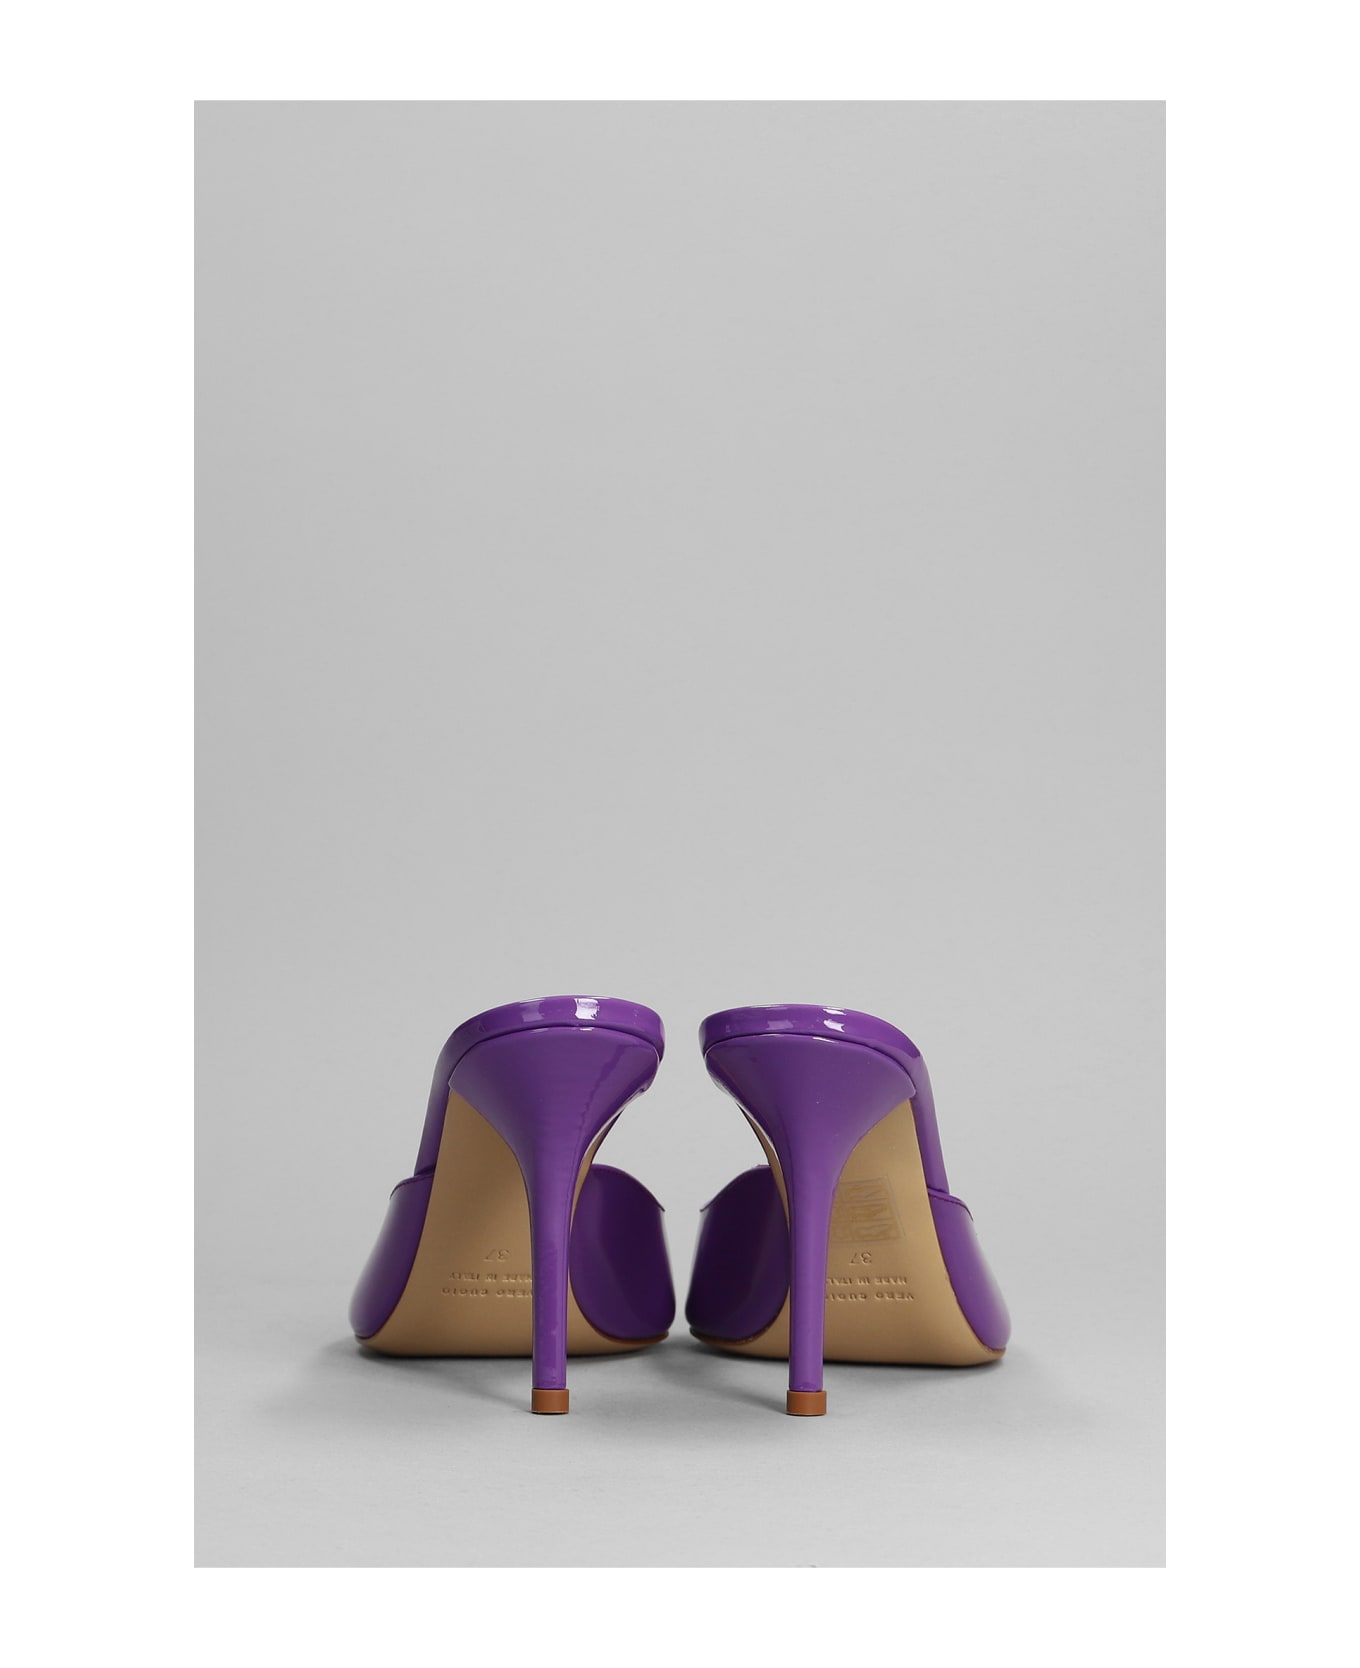 GIA BORGHINI Perni 04 Sandals In Viola Patent Leather - Purple